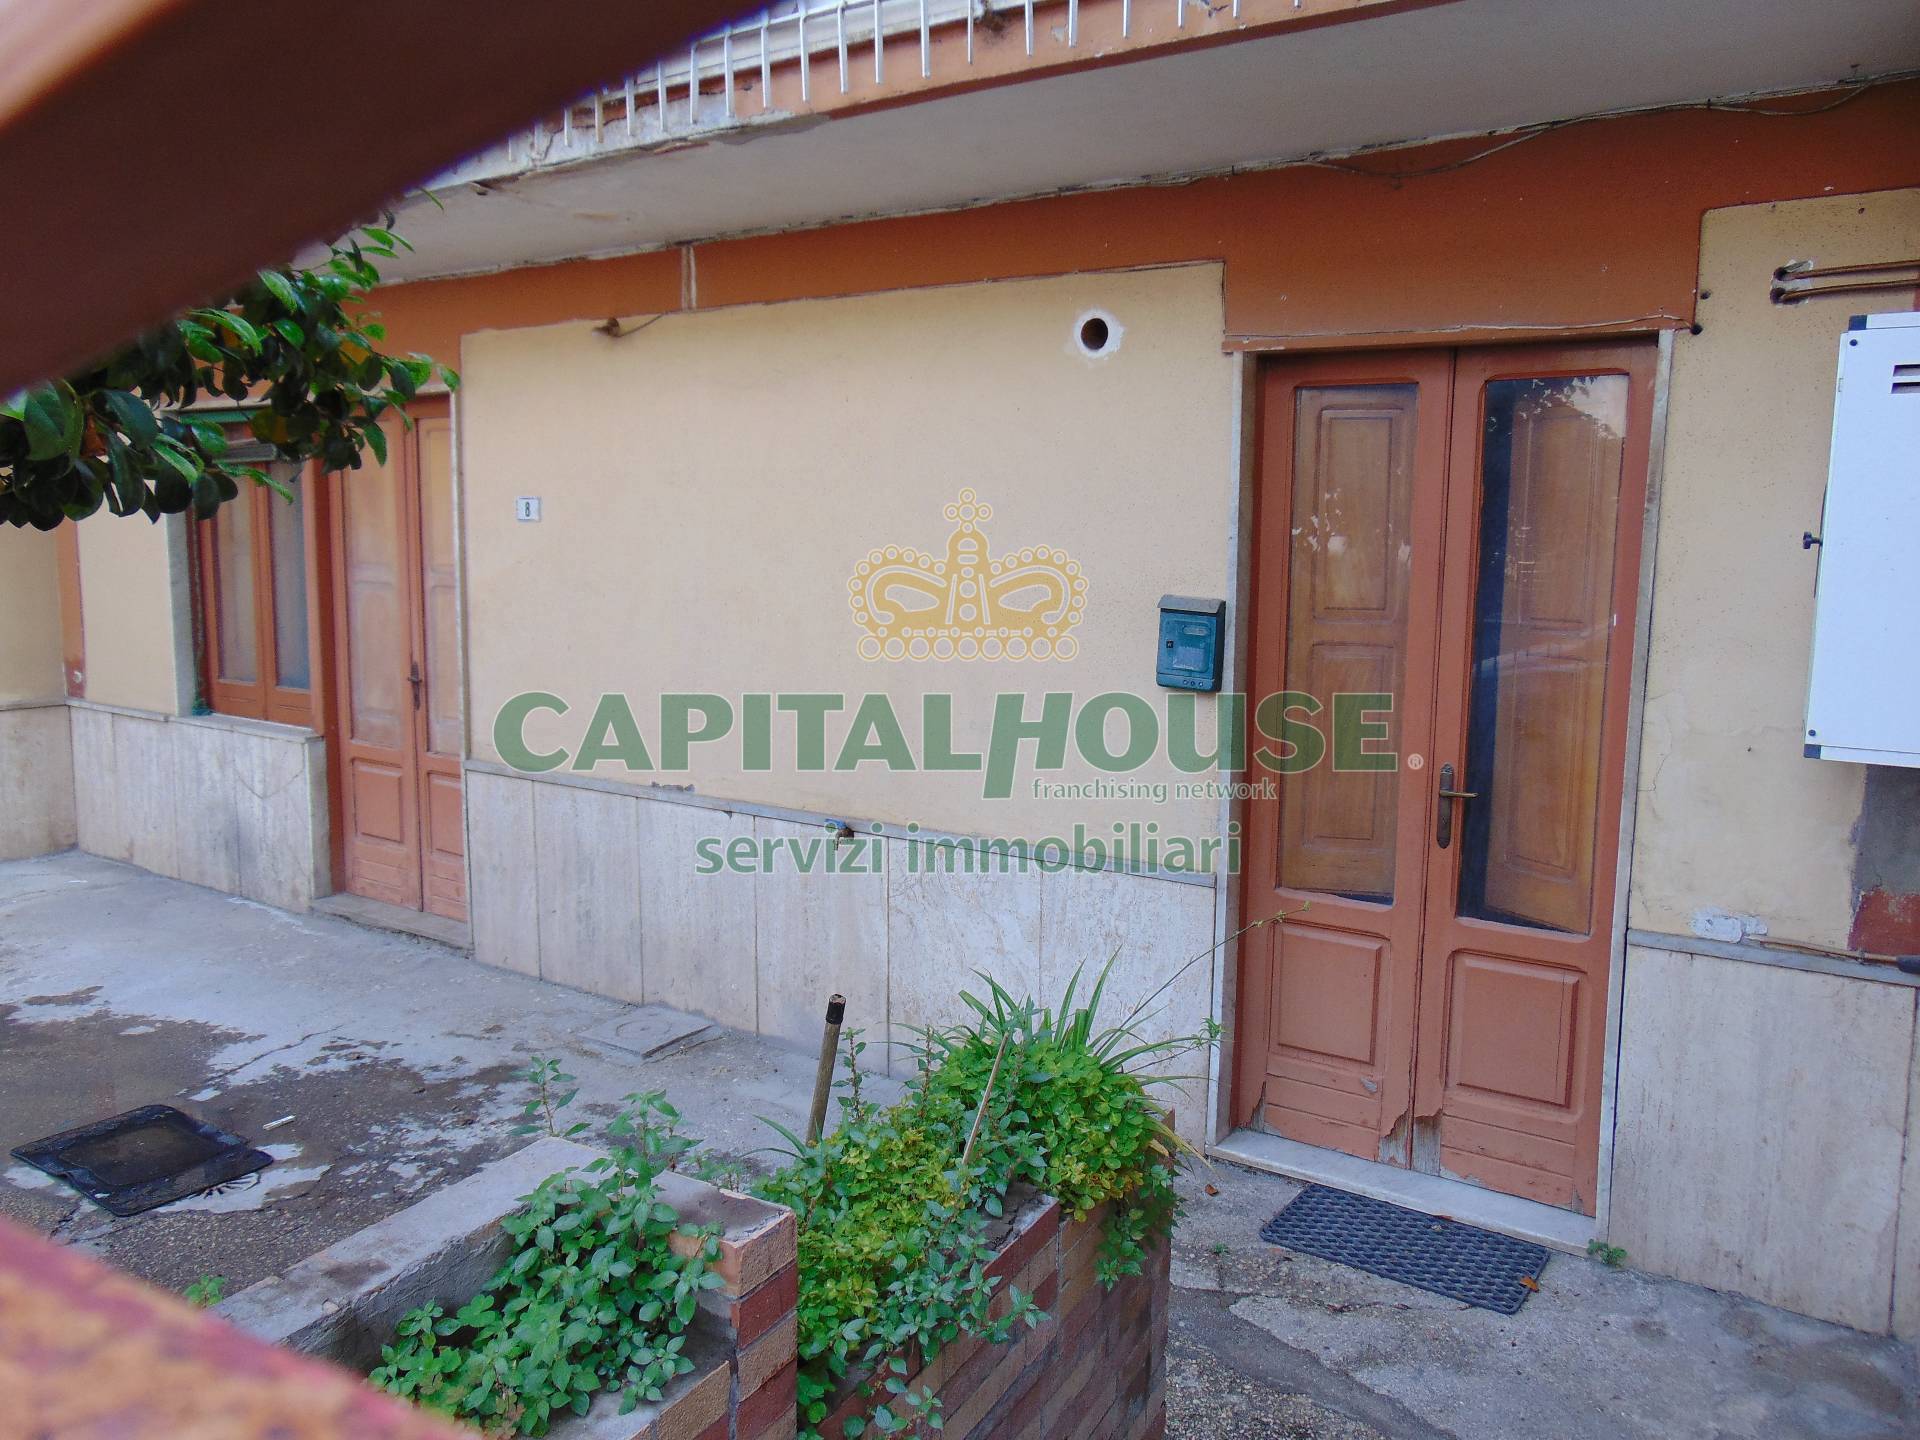 Appartamento in vendita a Quadrelle, 3 locali, prezzo € 85.000 | PortaleAgenzieImmobiliari.it